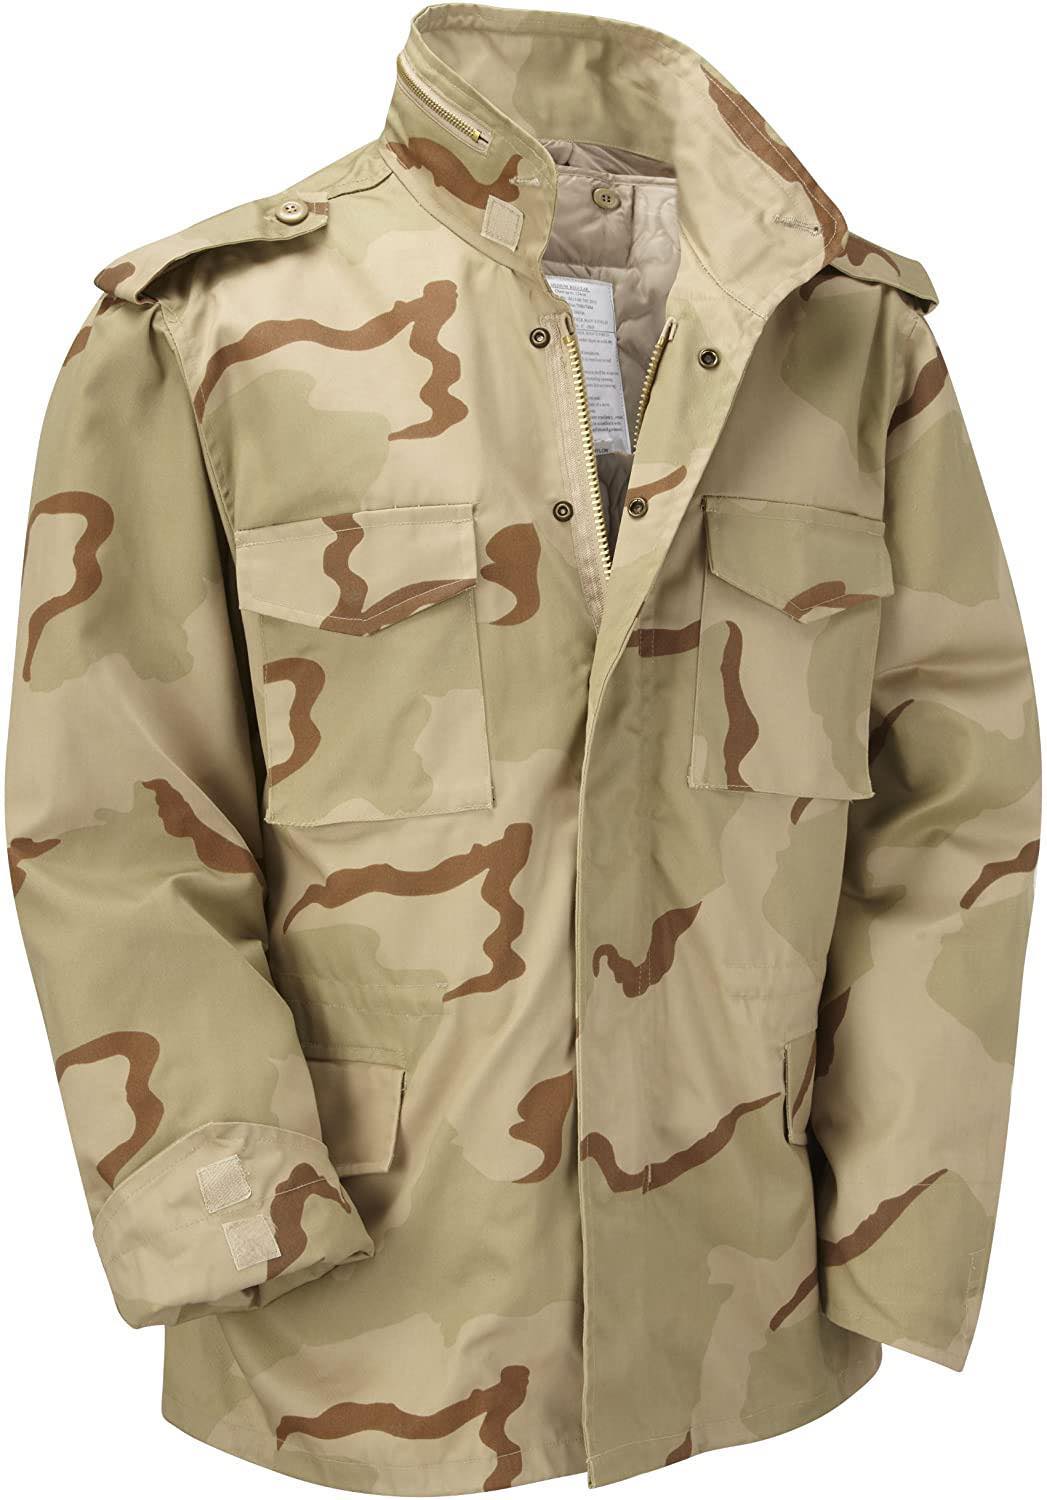 One Easy Way to Copy Zayn Malik's Military Style Jacket | GQ